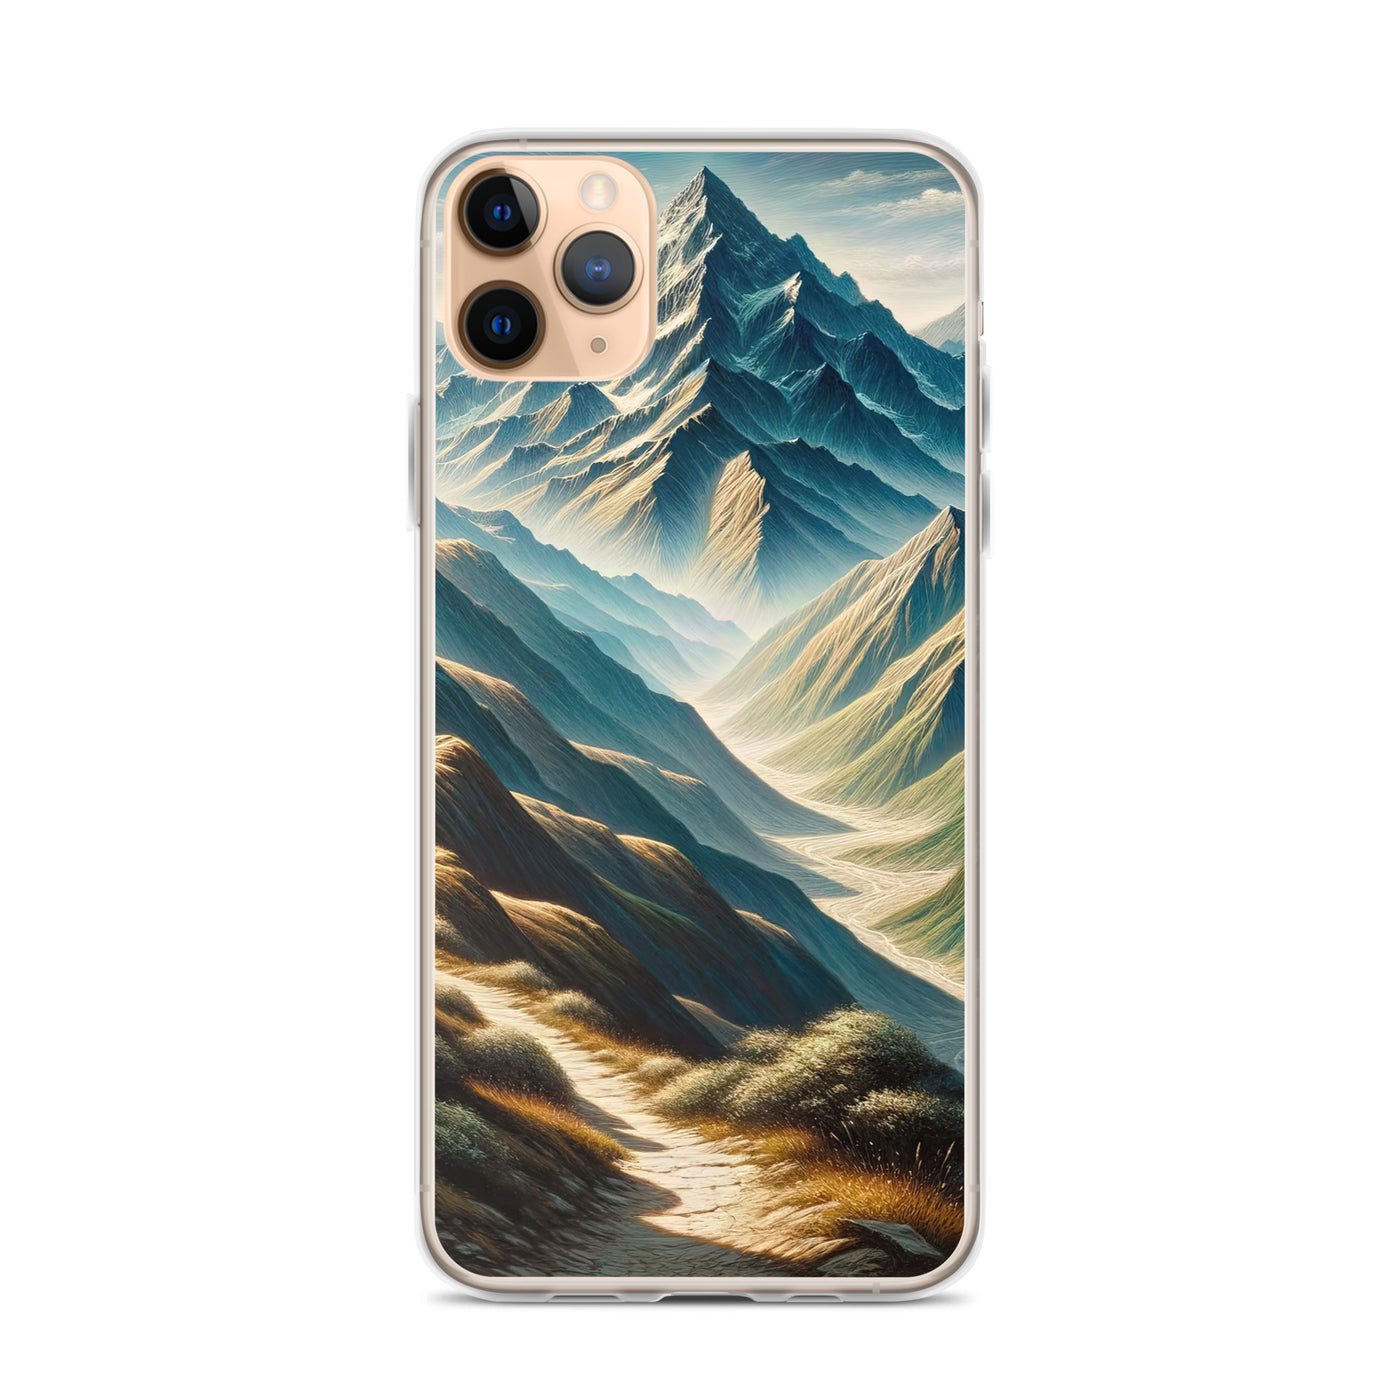 Berglandschaft: Acrylgemälde mit hervorgehobenem Pfad - iPhone Schutzhülle (durchsichtig) berge xxx yyy zzz iPhone 11 Pro Max